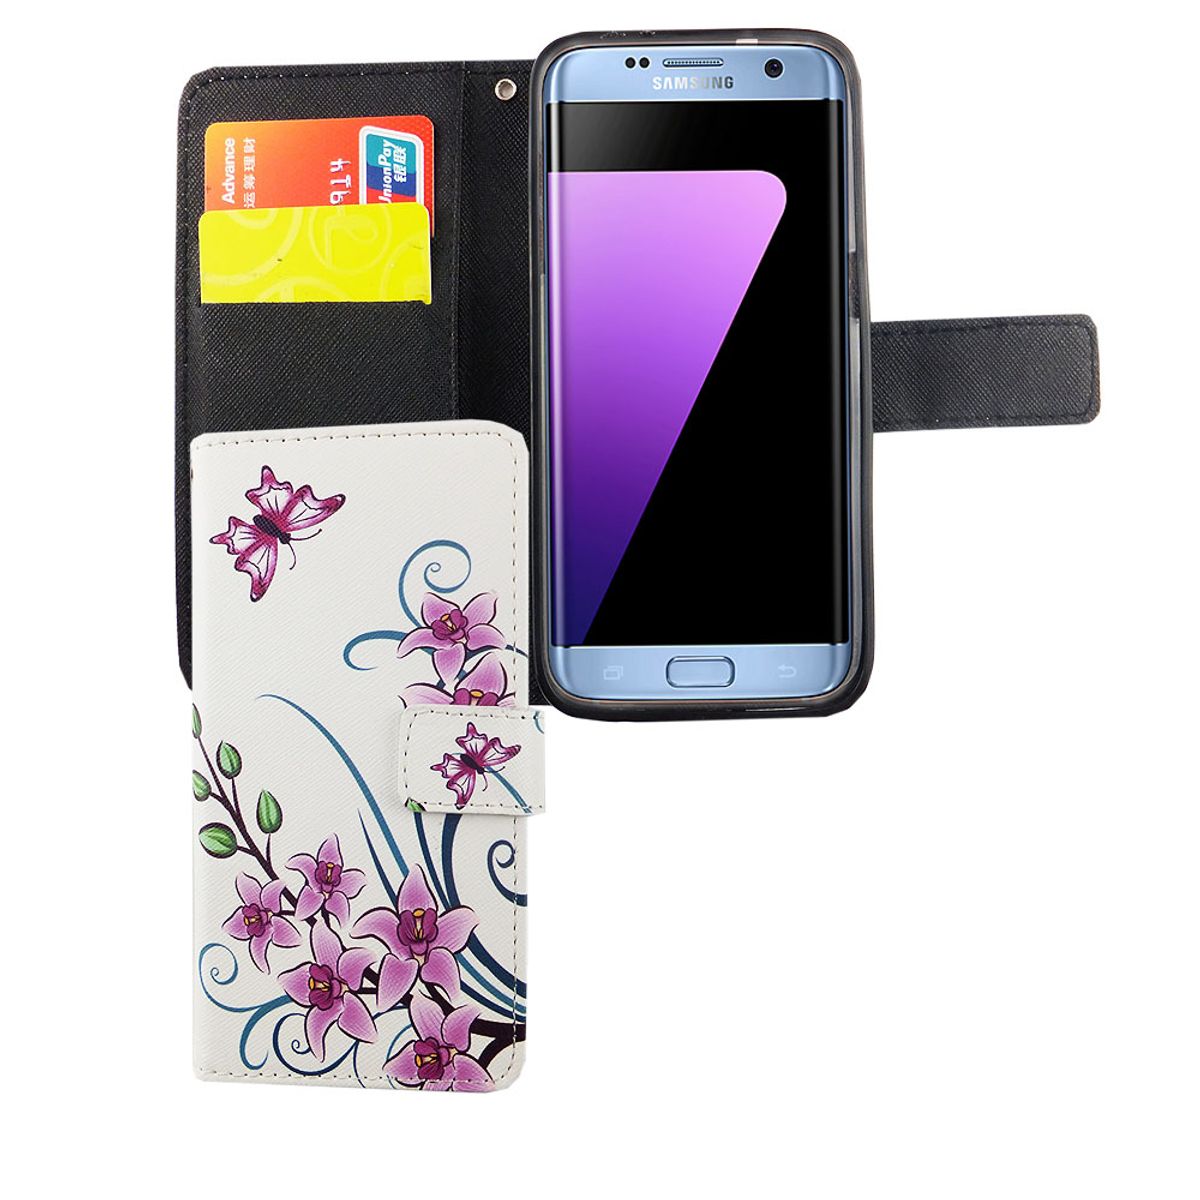 König Design Funda para teléfono móvil Compatible con Samsung Galaxy S7 Edge Funda Protectora Tipo Cartera 360 Funda Blanca